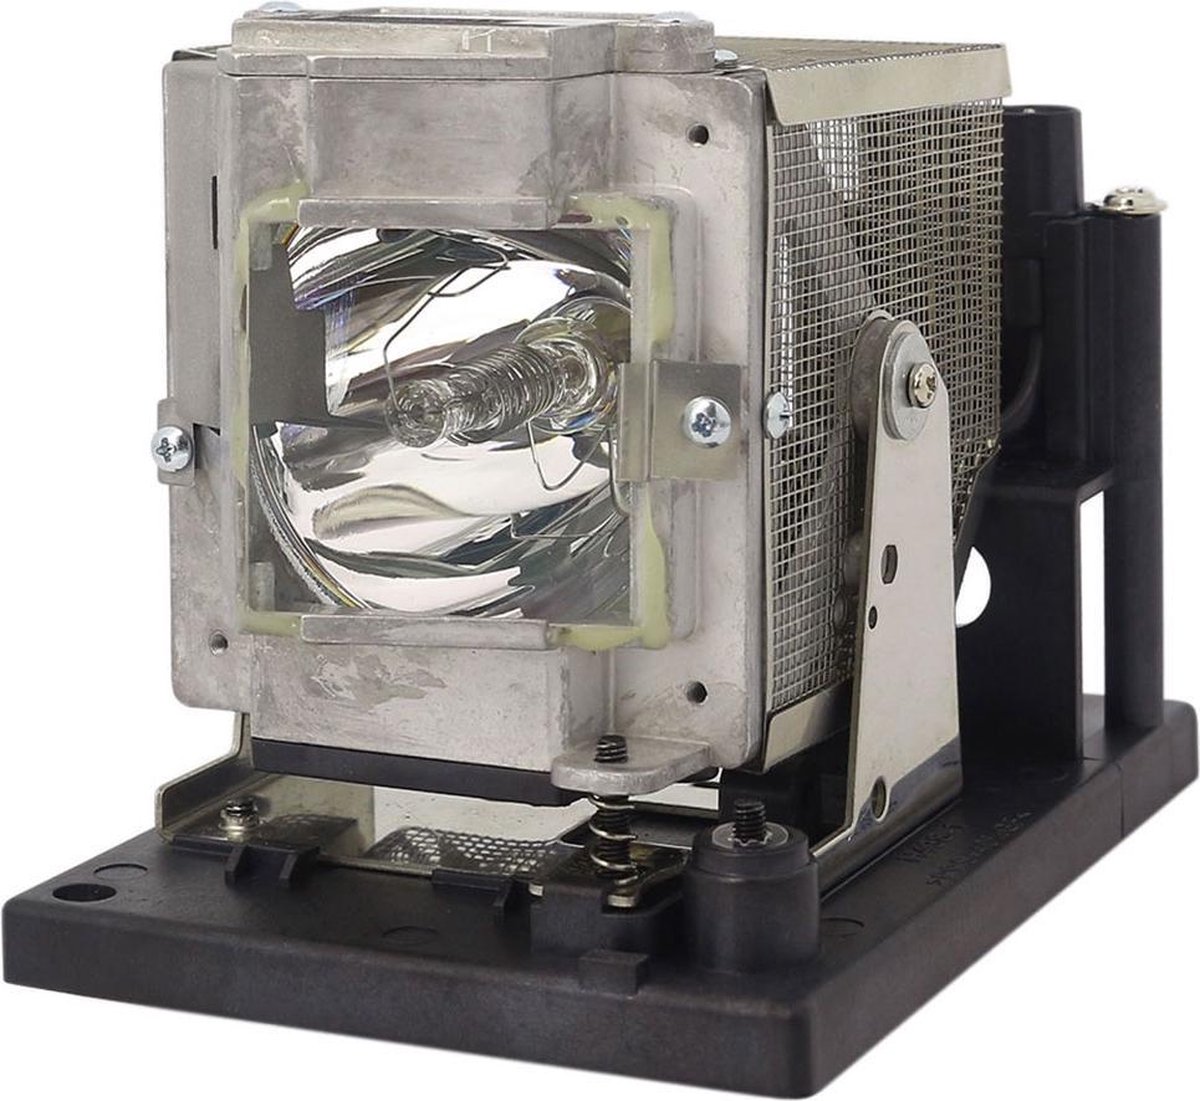 Beamerlamp geschikt voor de EIKI EIP-5000 beamer, lamp code AH-50001. Bevat originele UHP lamp, prestaties gelijk aan origineel.